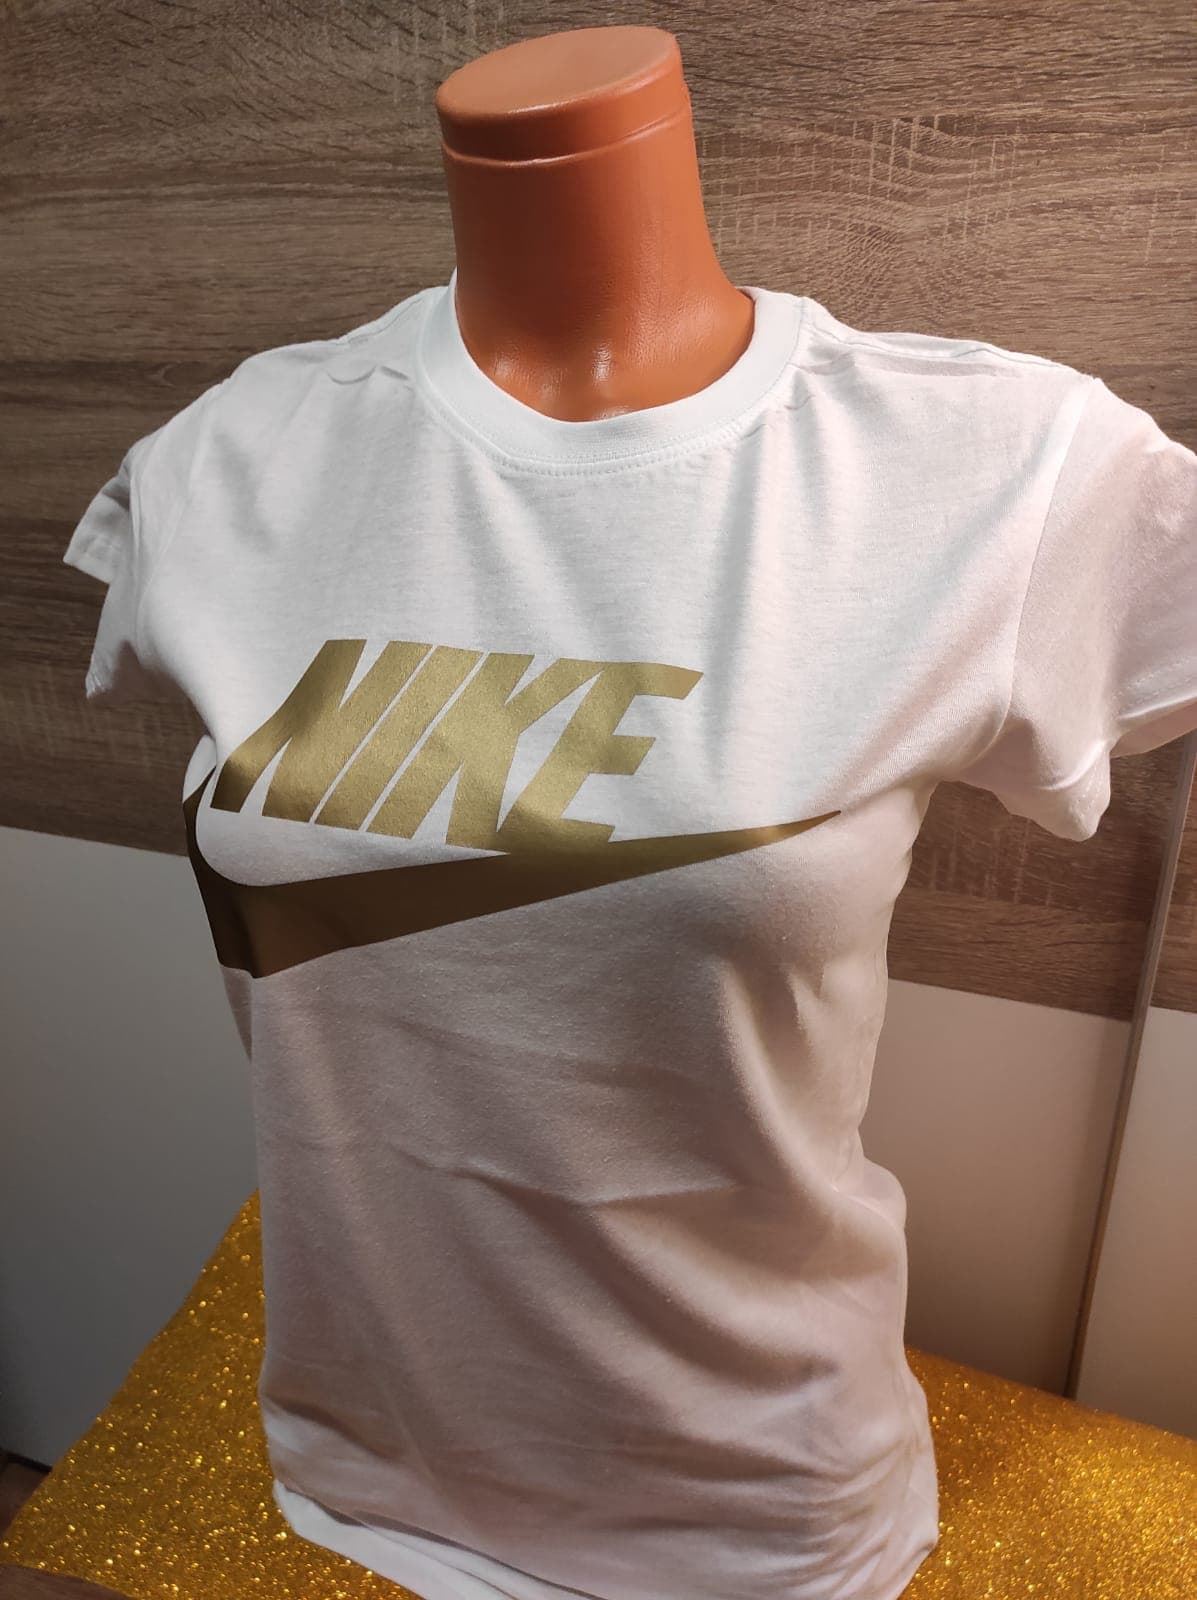 Camiseta Nike mujer - Imagen 1